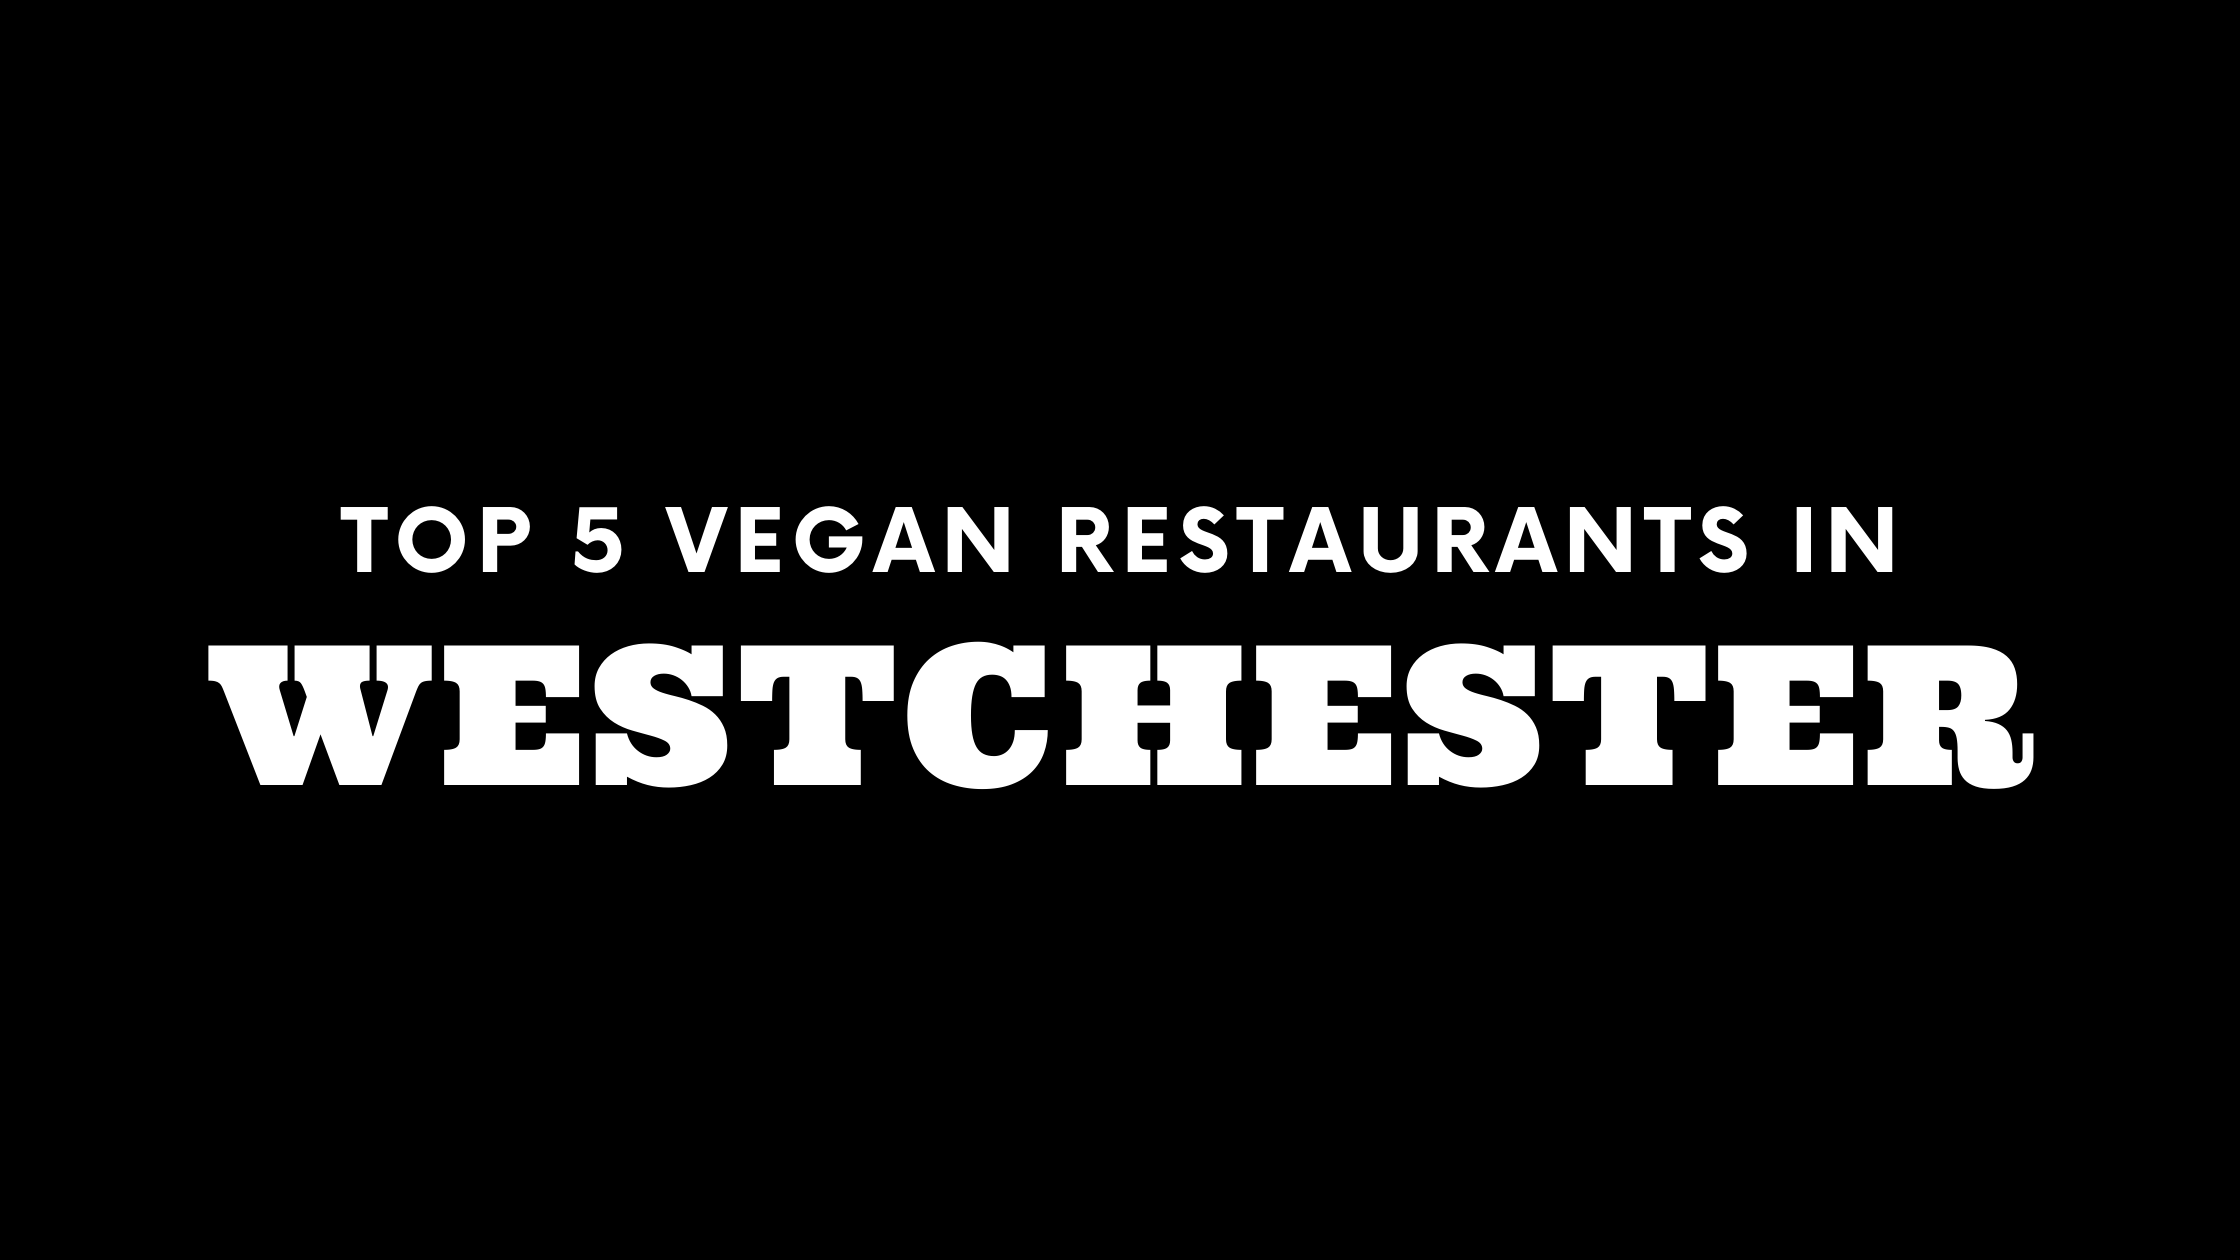 Top 5 Vegan Restaurants in Westchester